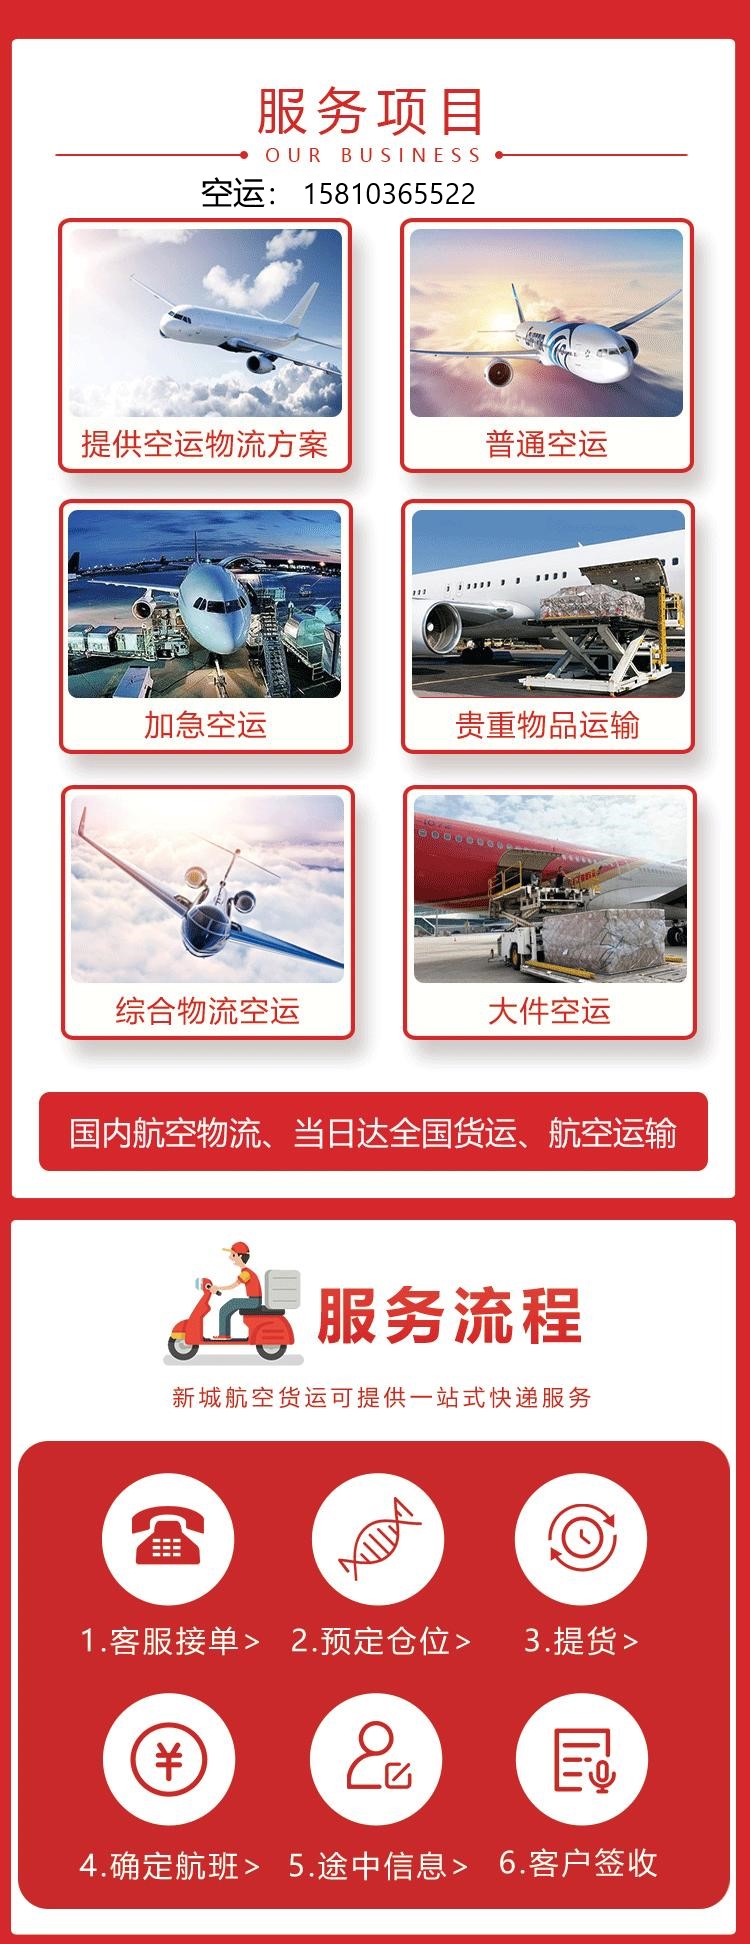 新闻:北京到扬州泰州空运物流专线